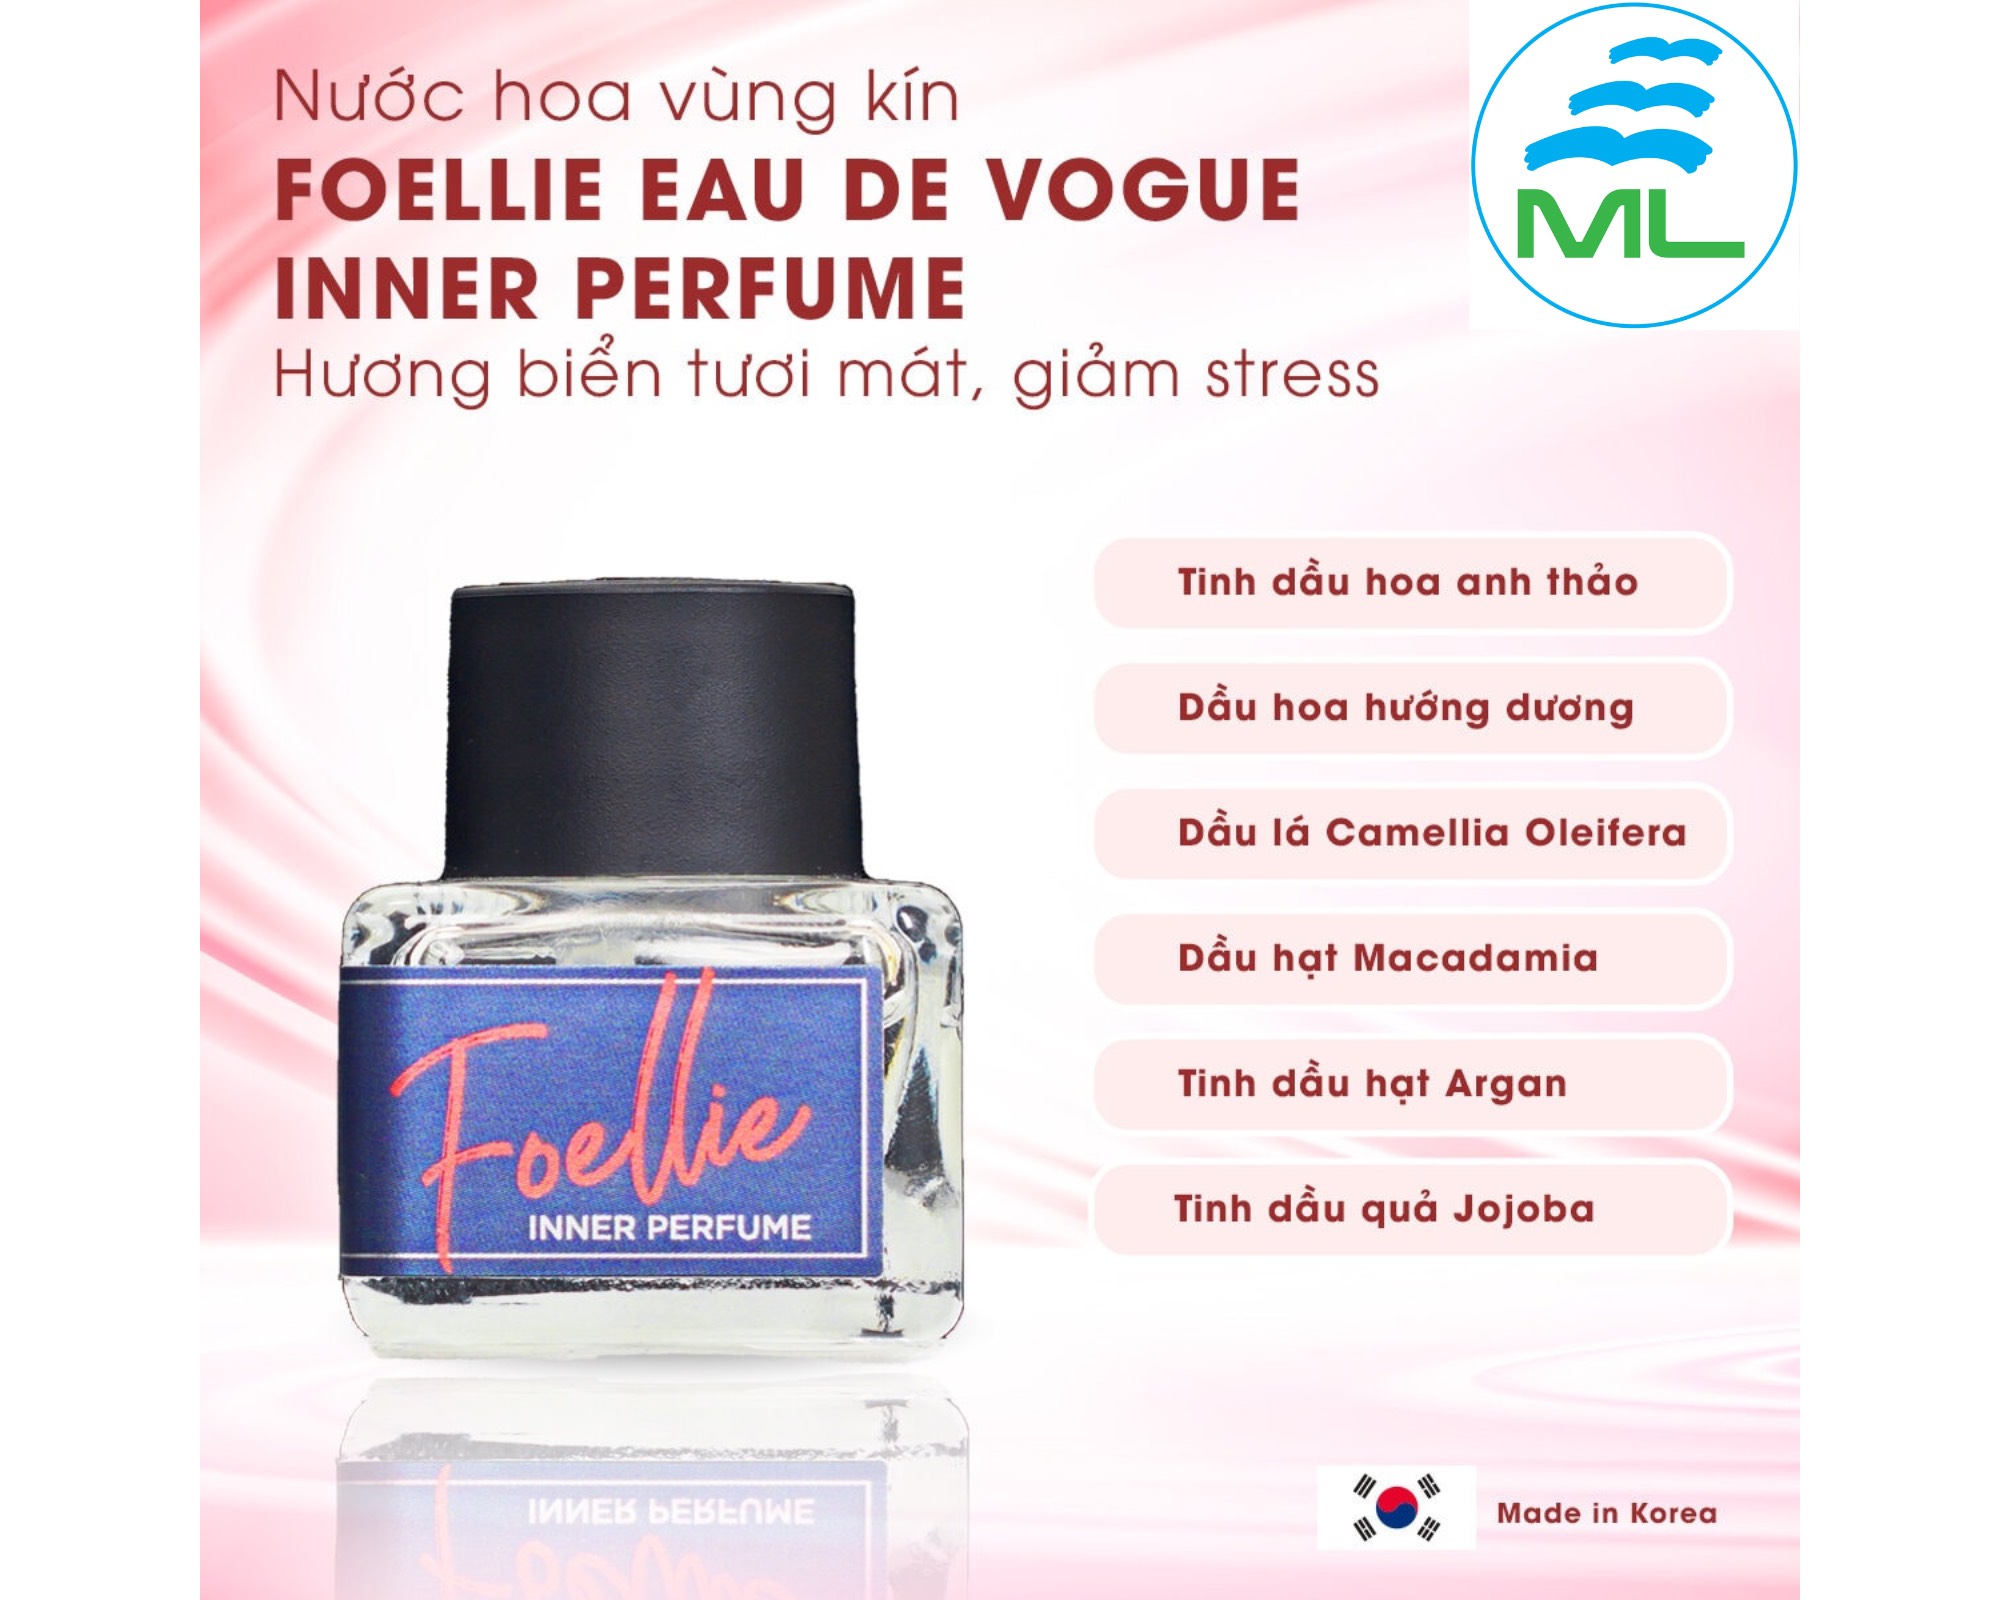 Nước hoa vùng kín Foellie Eau De Innerb Perfume - Vogue (màu xanh) 5 ml